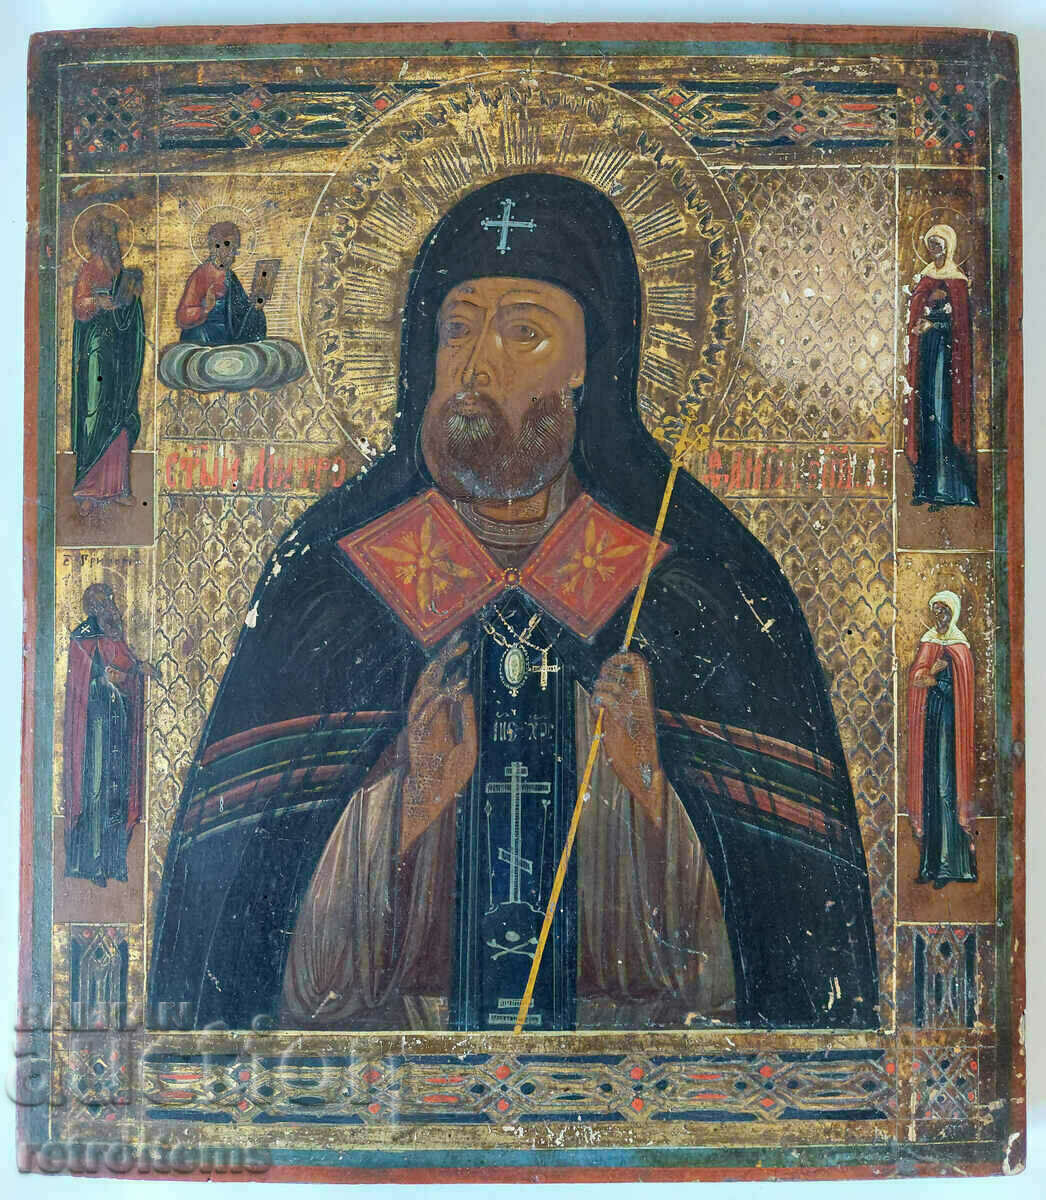 secolul al 19-lea! Icoana rusă pictată manual a Sf. Mitrofan din Voronezh